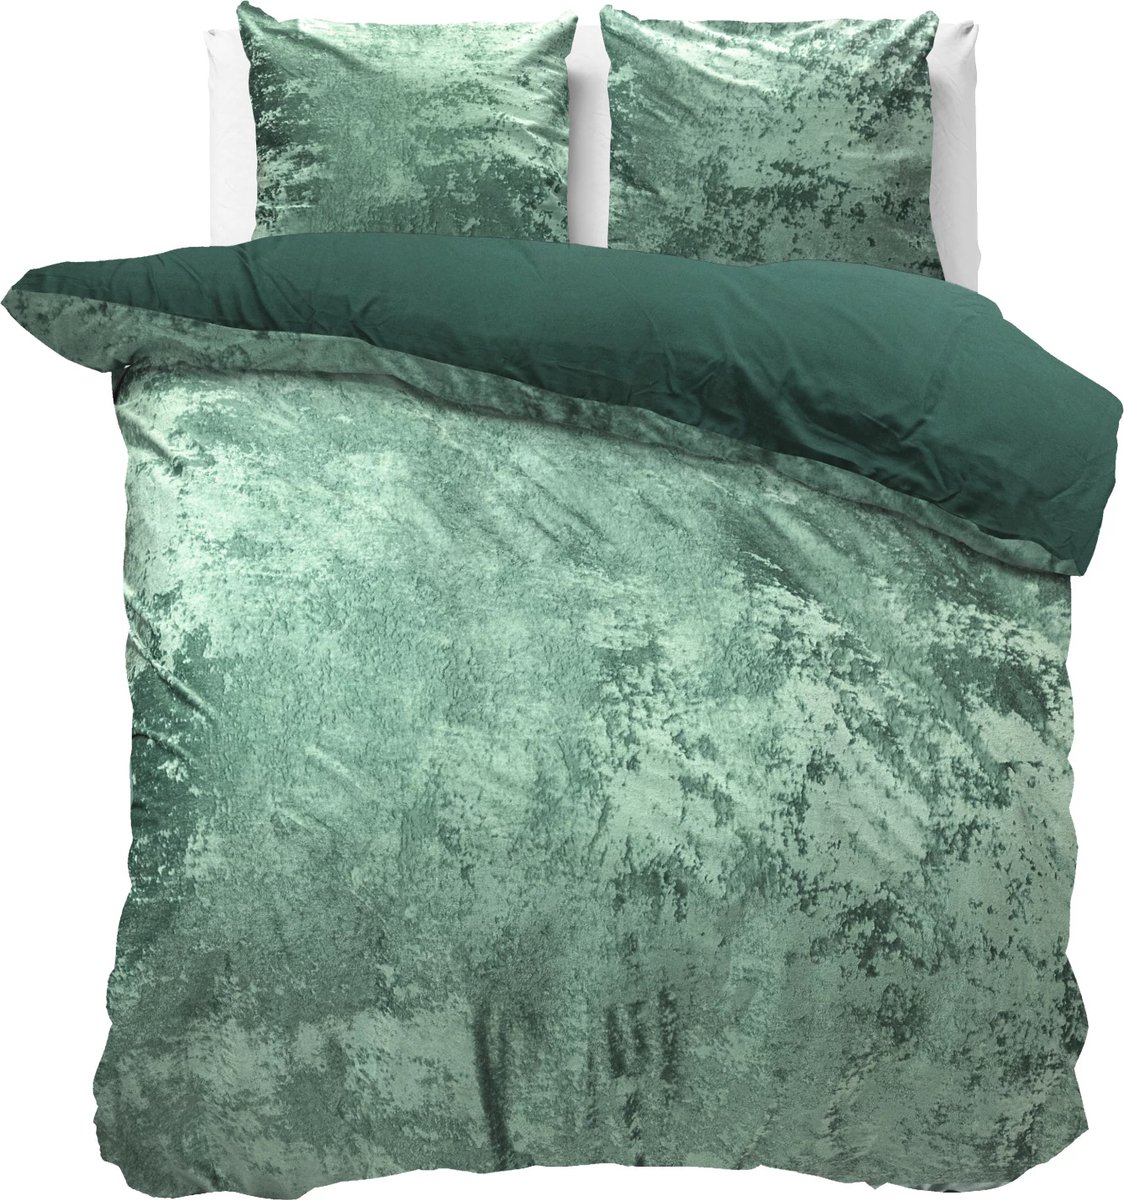 Fluweel zachte velvet dekbedovertrek uni groen - 200x200/220 (tweepersoons) - super fijn slapen - glinsterend effect - premium kwaliteit - met handige drukknopen